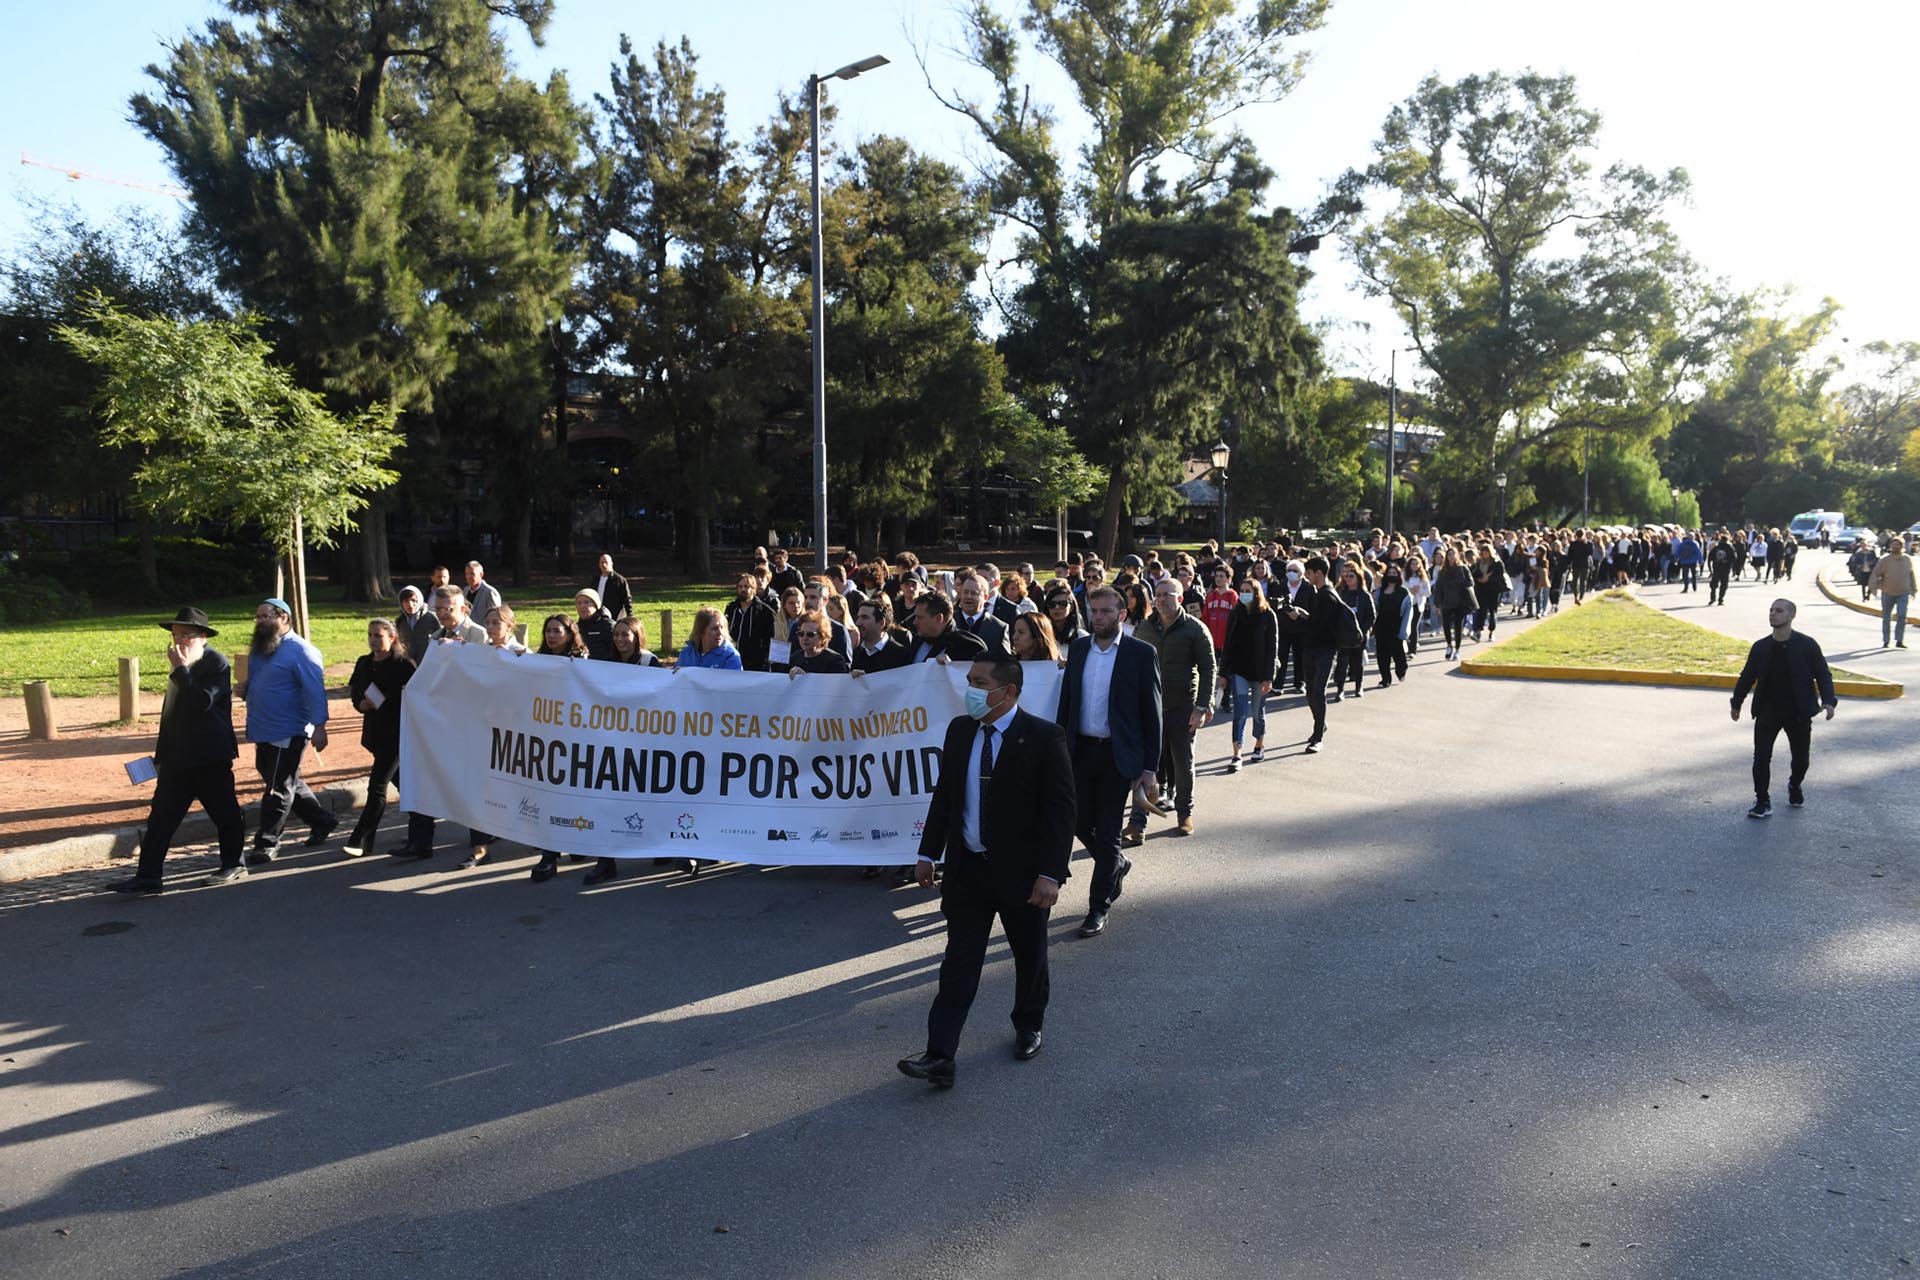 El acto se realizó en simultáneo con la histórica Marcha por la Vida de cada año llevada a cabo en Polonia